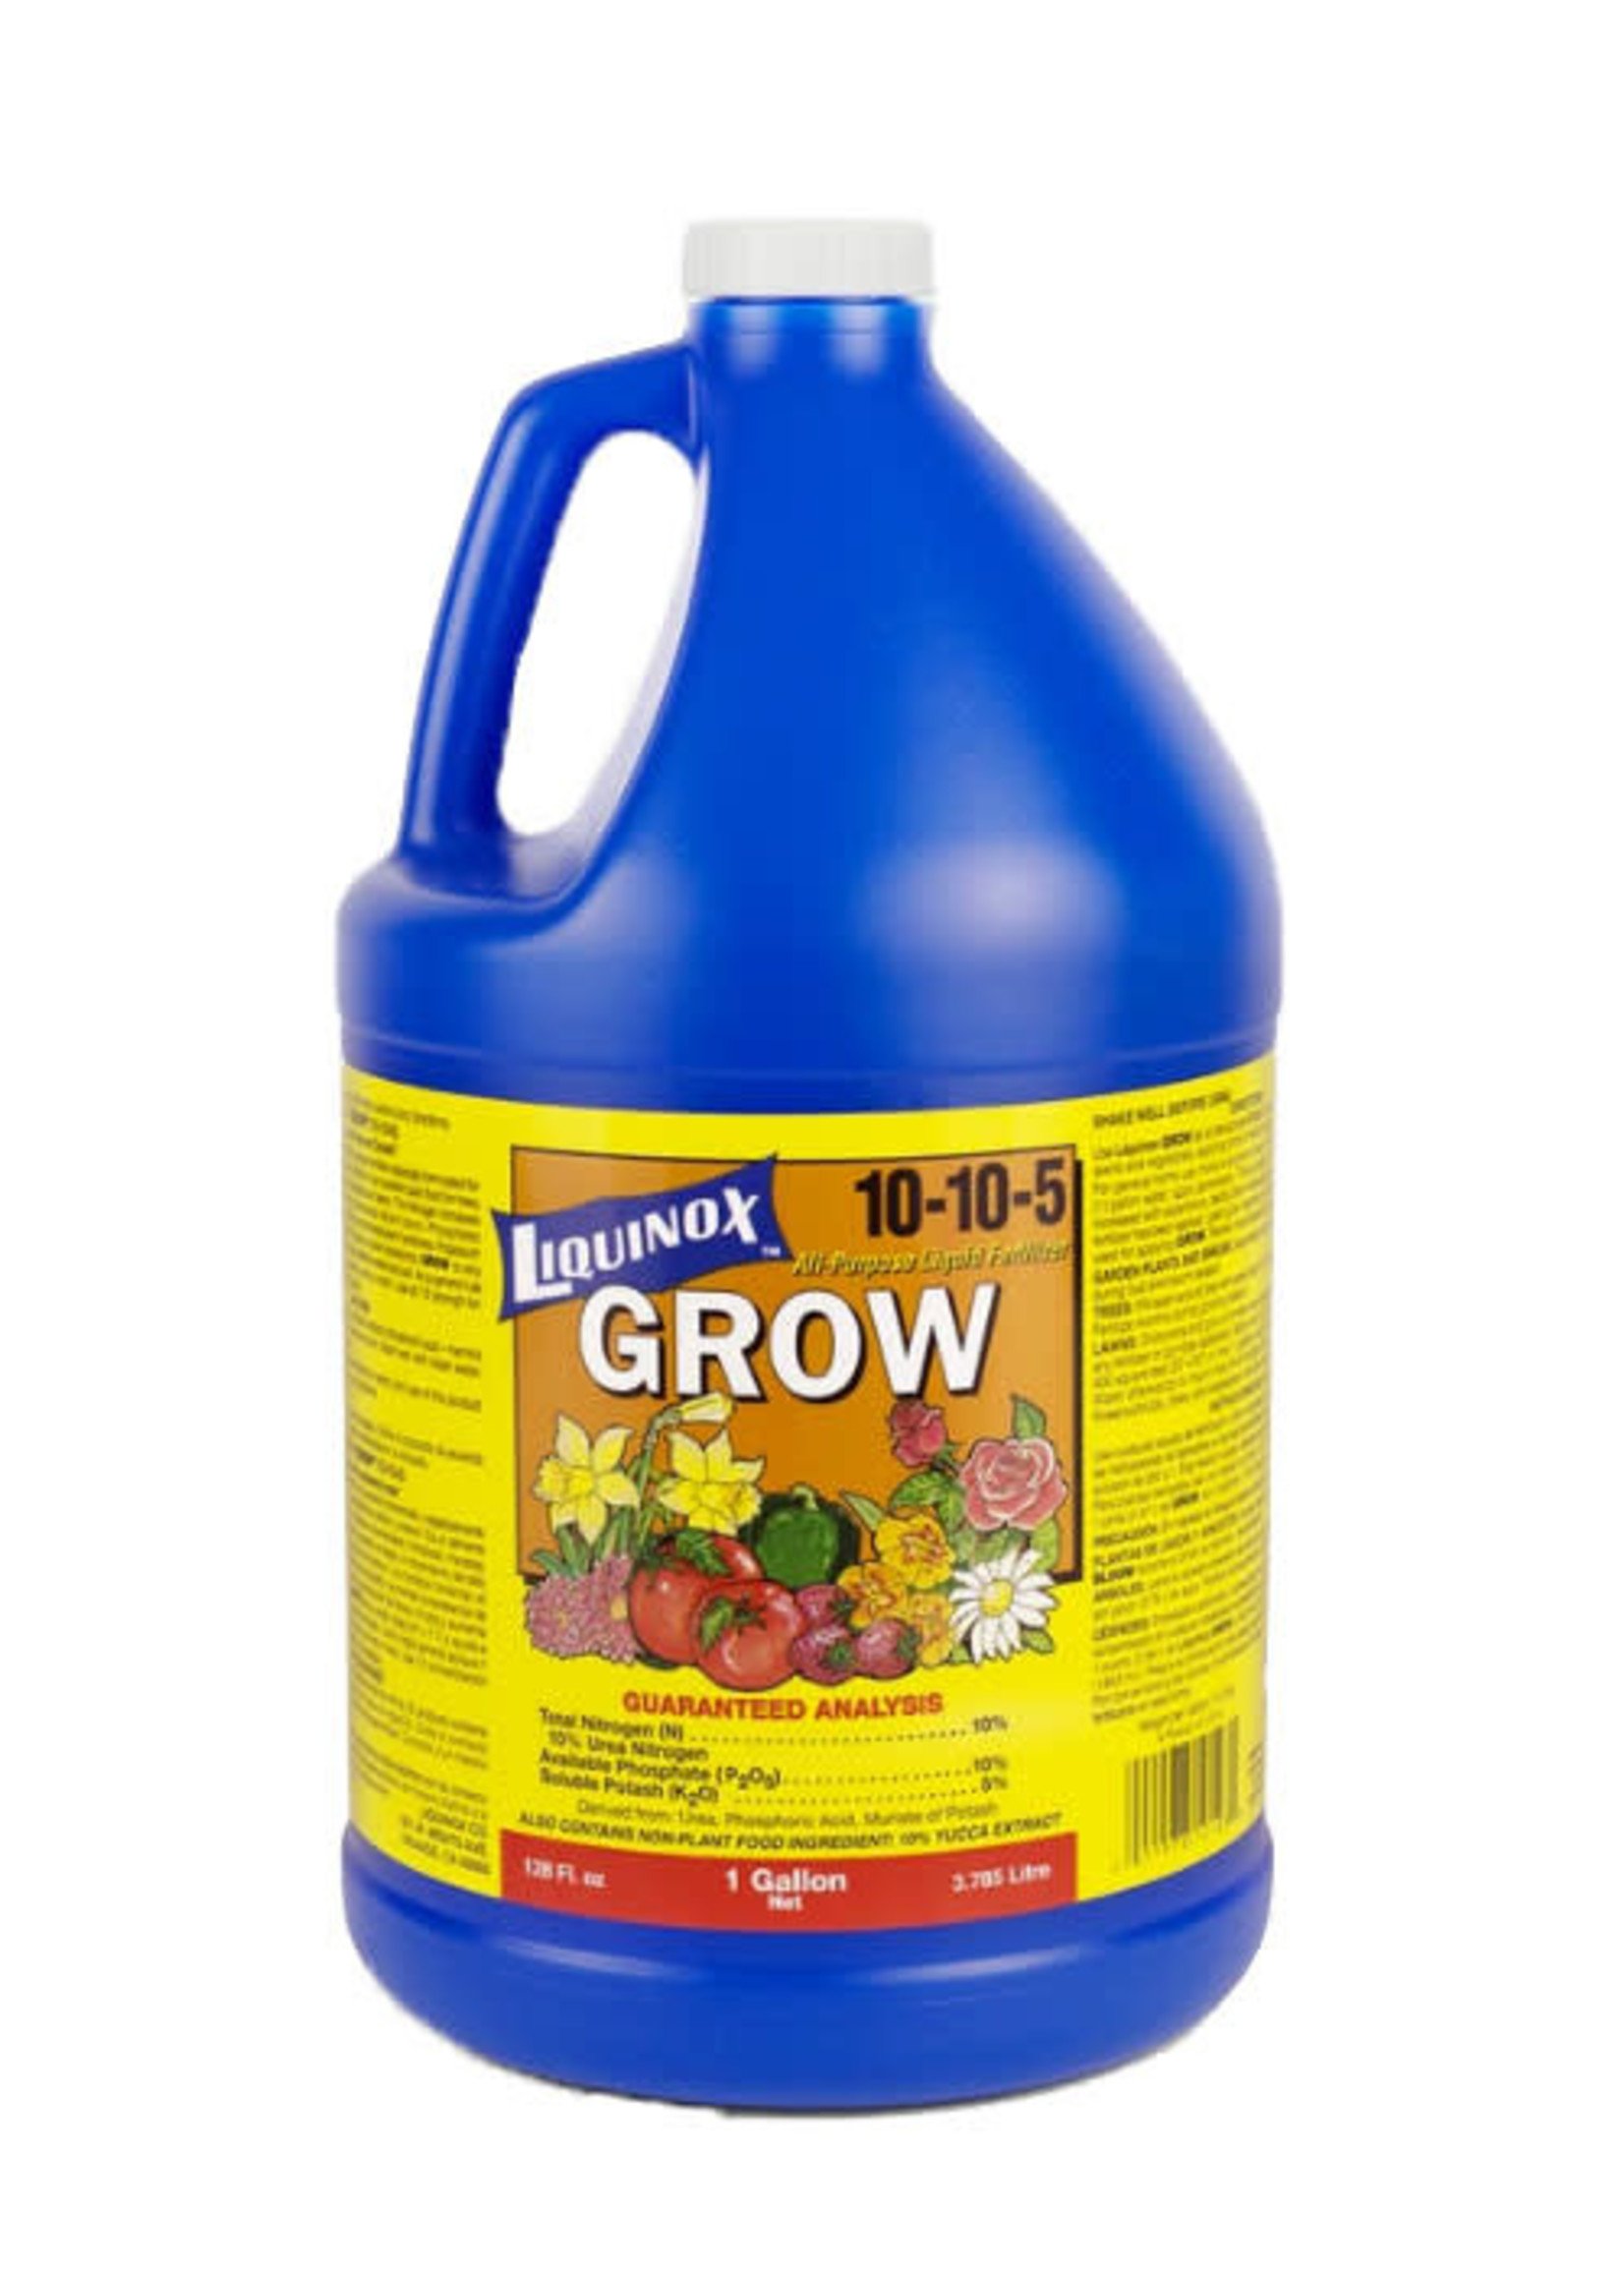 Liquinox Grow 10-10-5